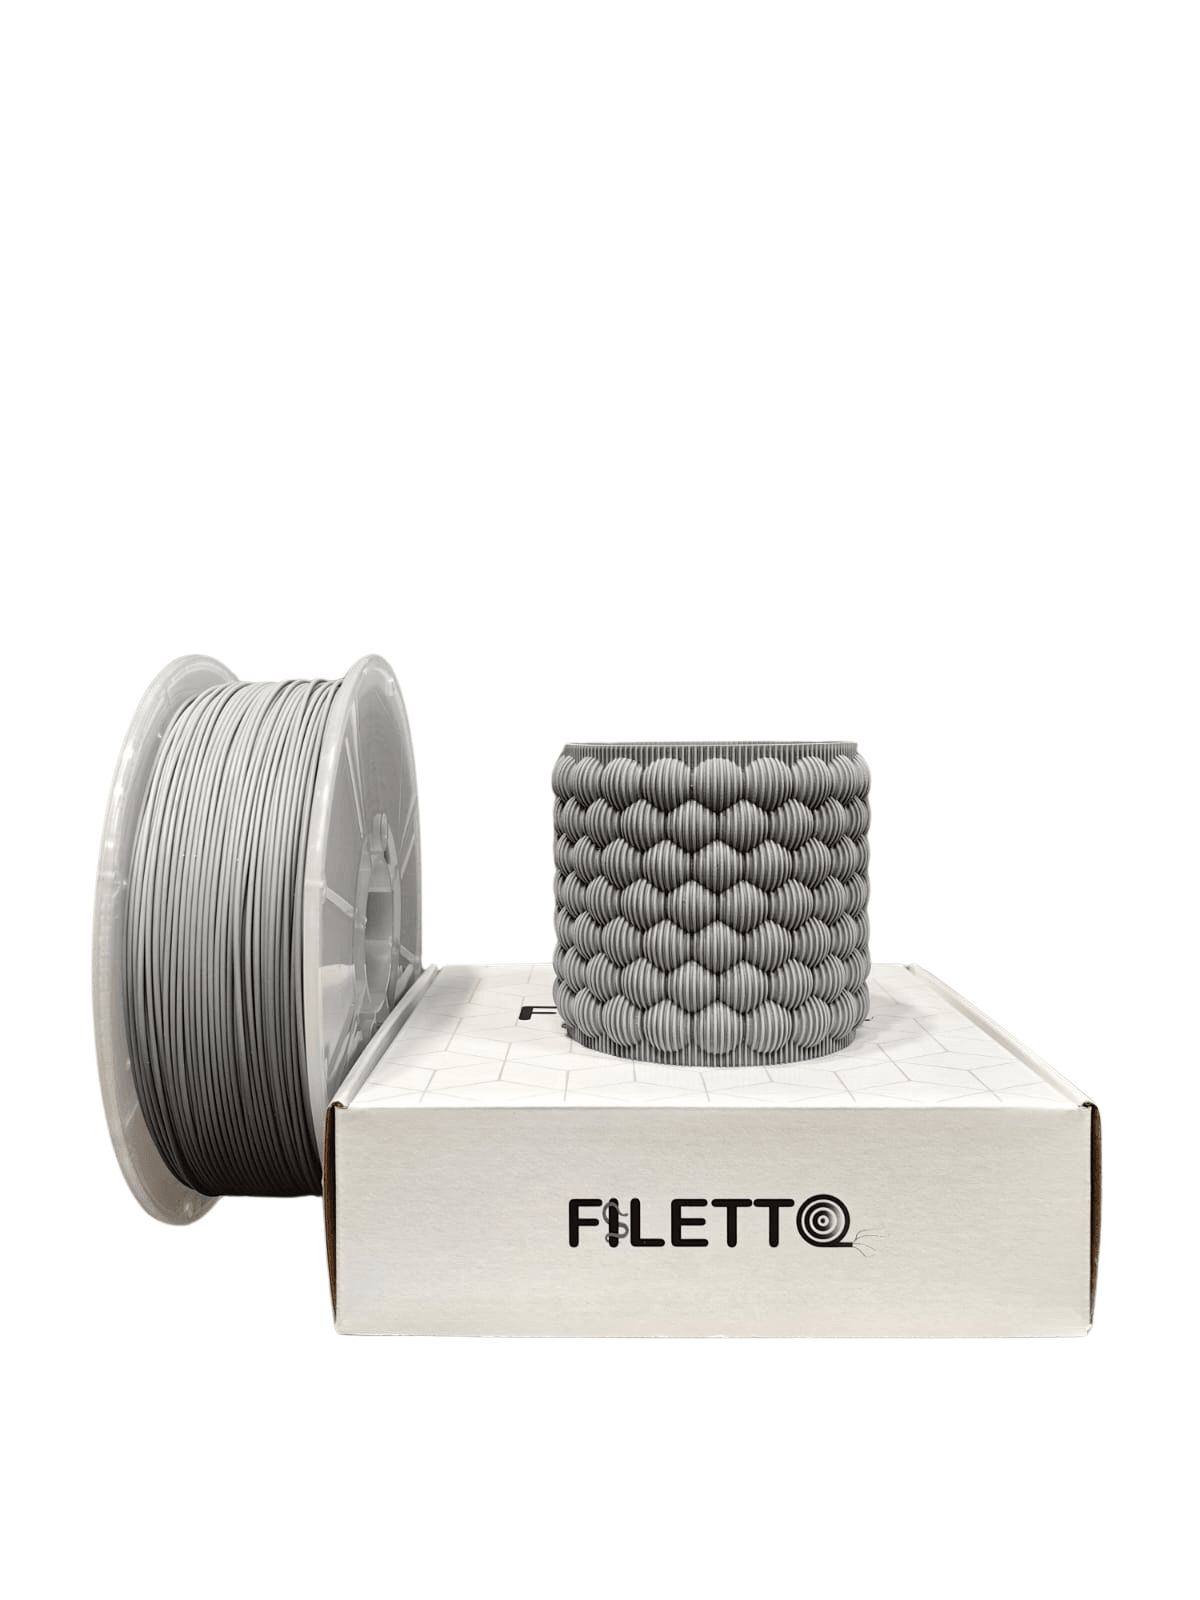 Filetto Pla+ Filament 1.75mm 1KG - Gray